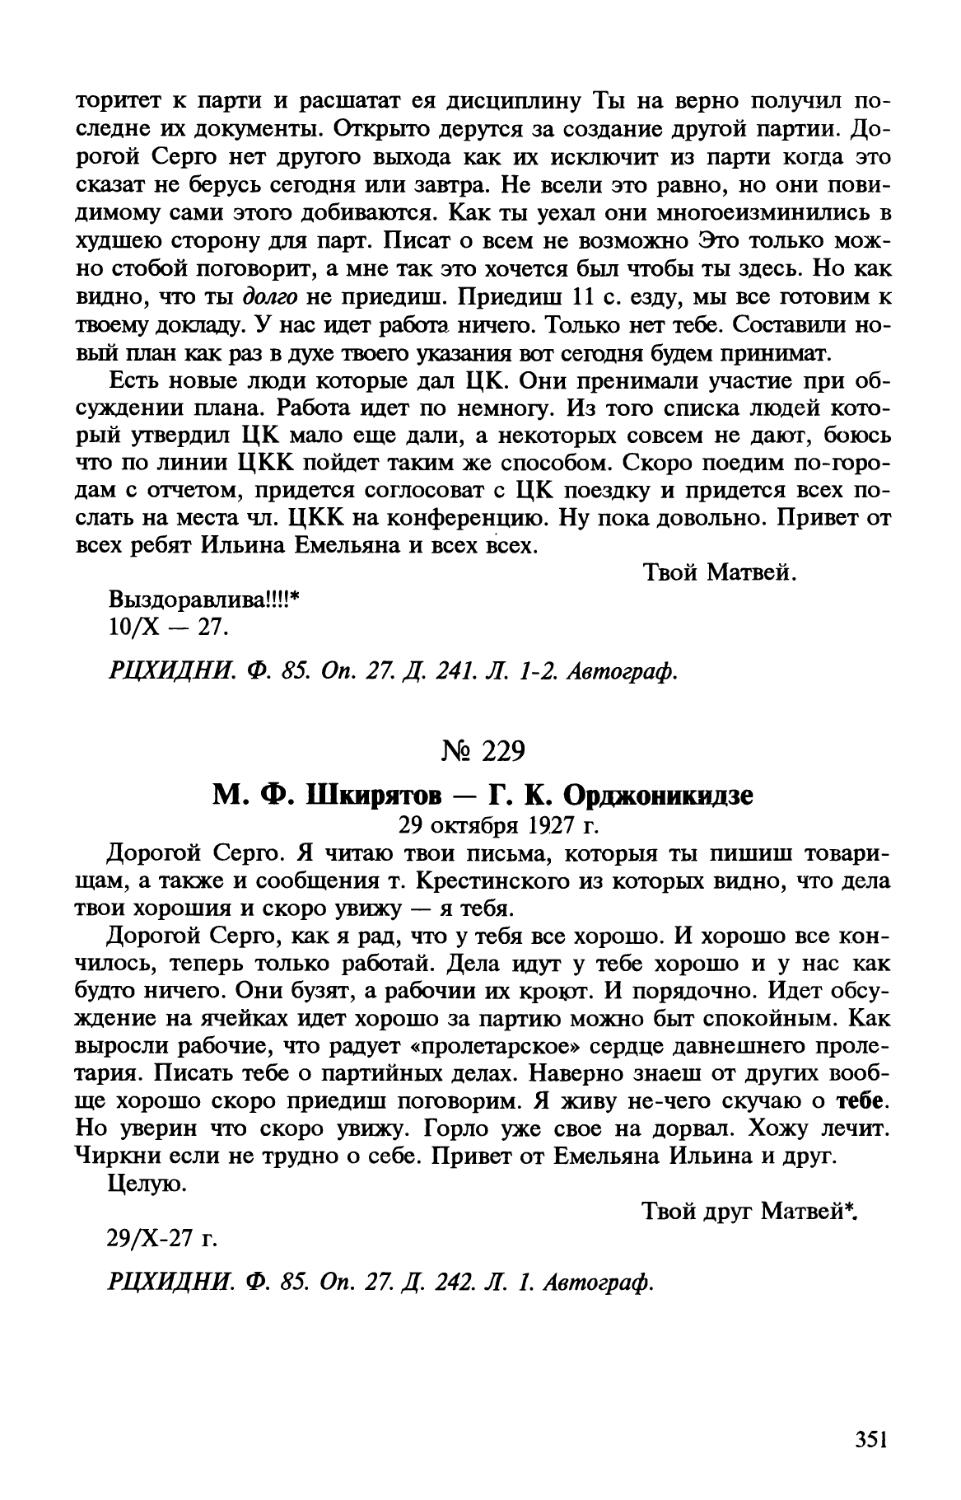 229. М. Ф. Шкирятов — Г. К. Орджоникидзе. 29 октября 1927 г.